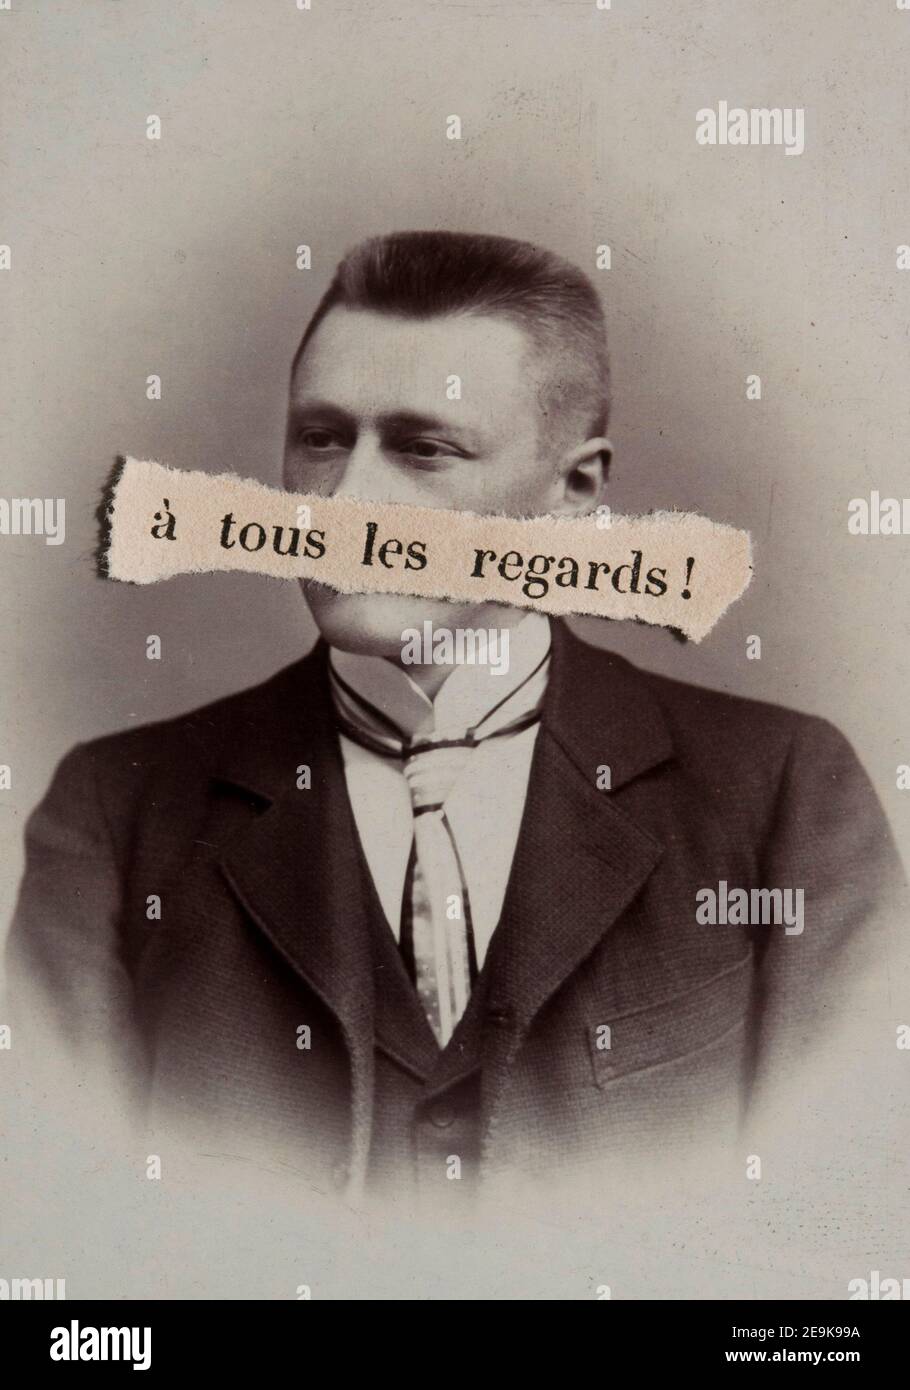 Frase in francese A TOUS LES RIGUARDA su una carta strappata, coprendo la bocca in un ritratto antico di un uomo Foto Stock